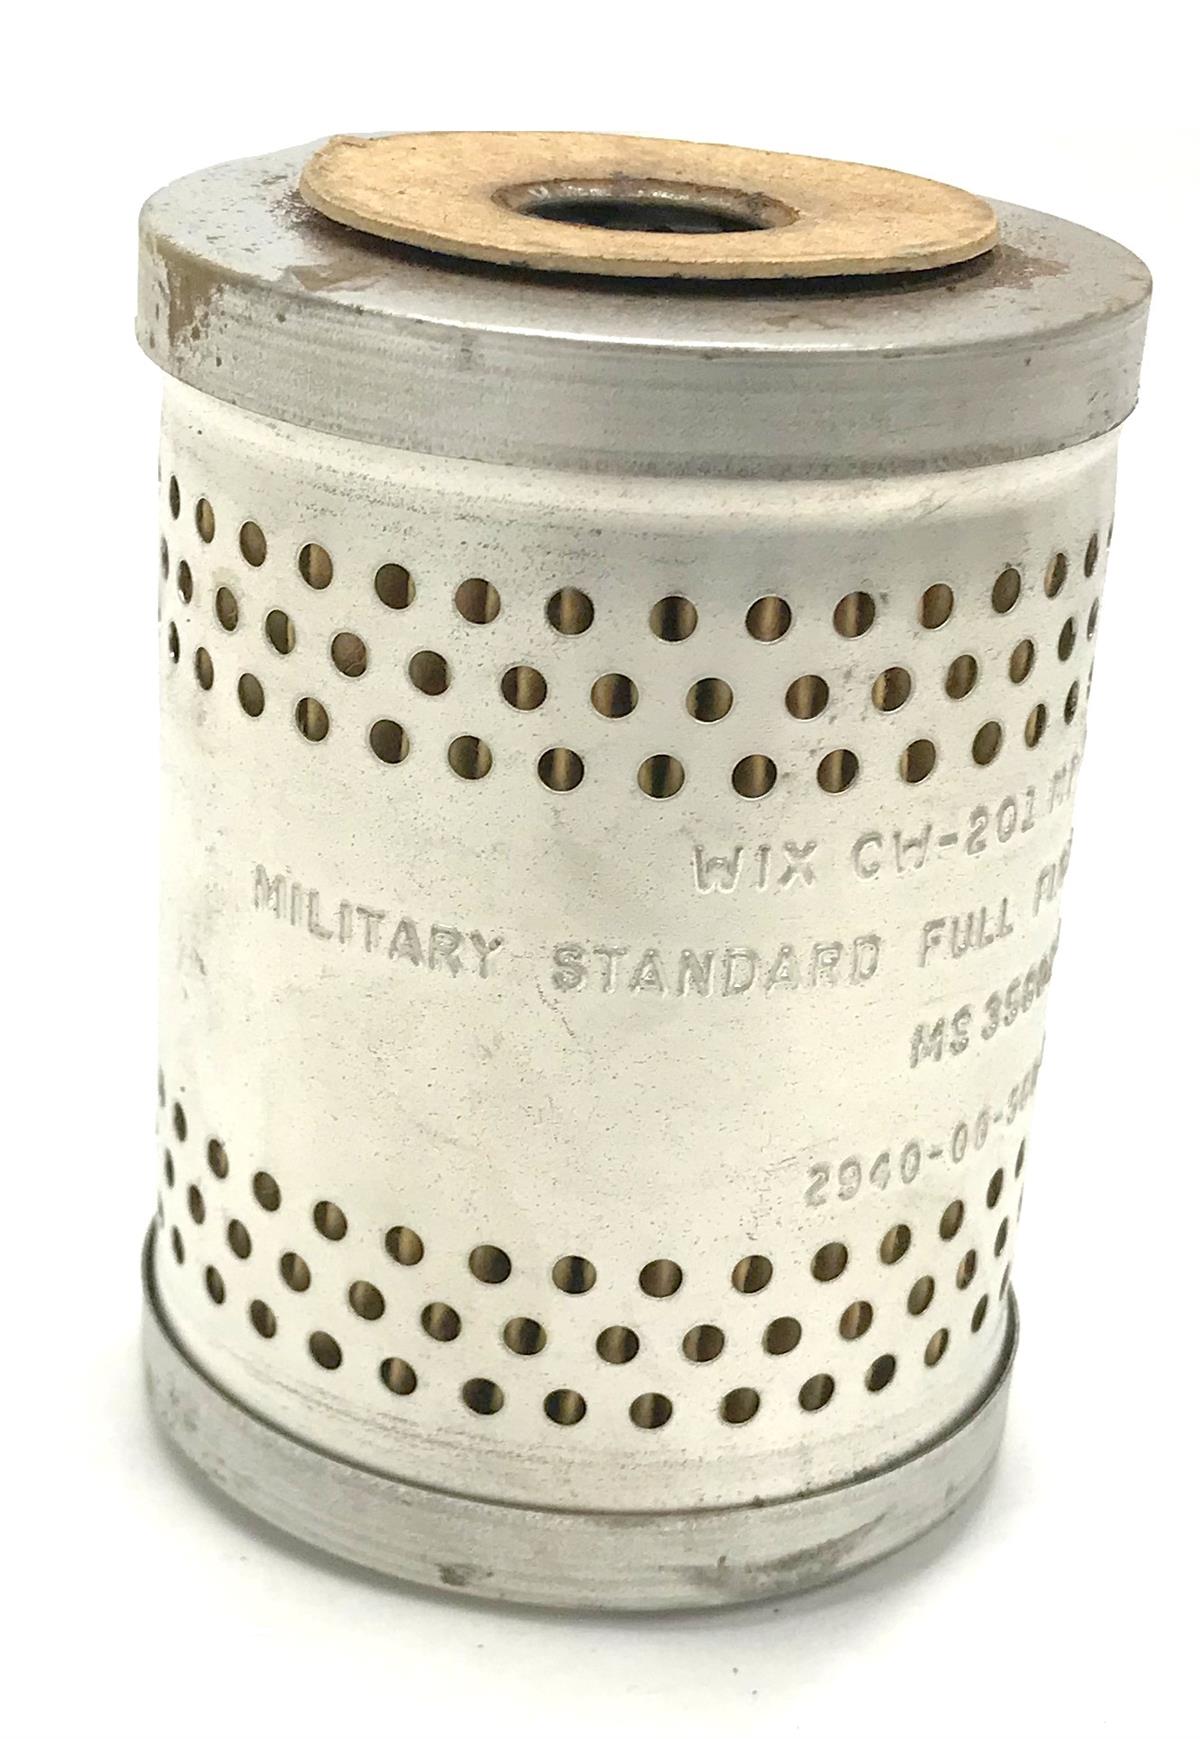 MU-103 | MU-103  2A042 - 4A084 - 4A032 - M274 Military Standard Engine Oil Filters (1).jpeg